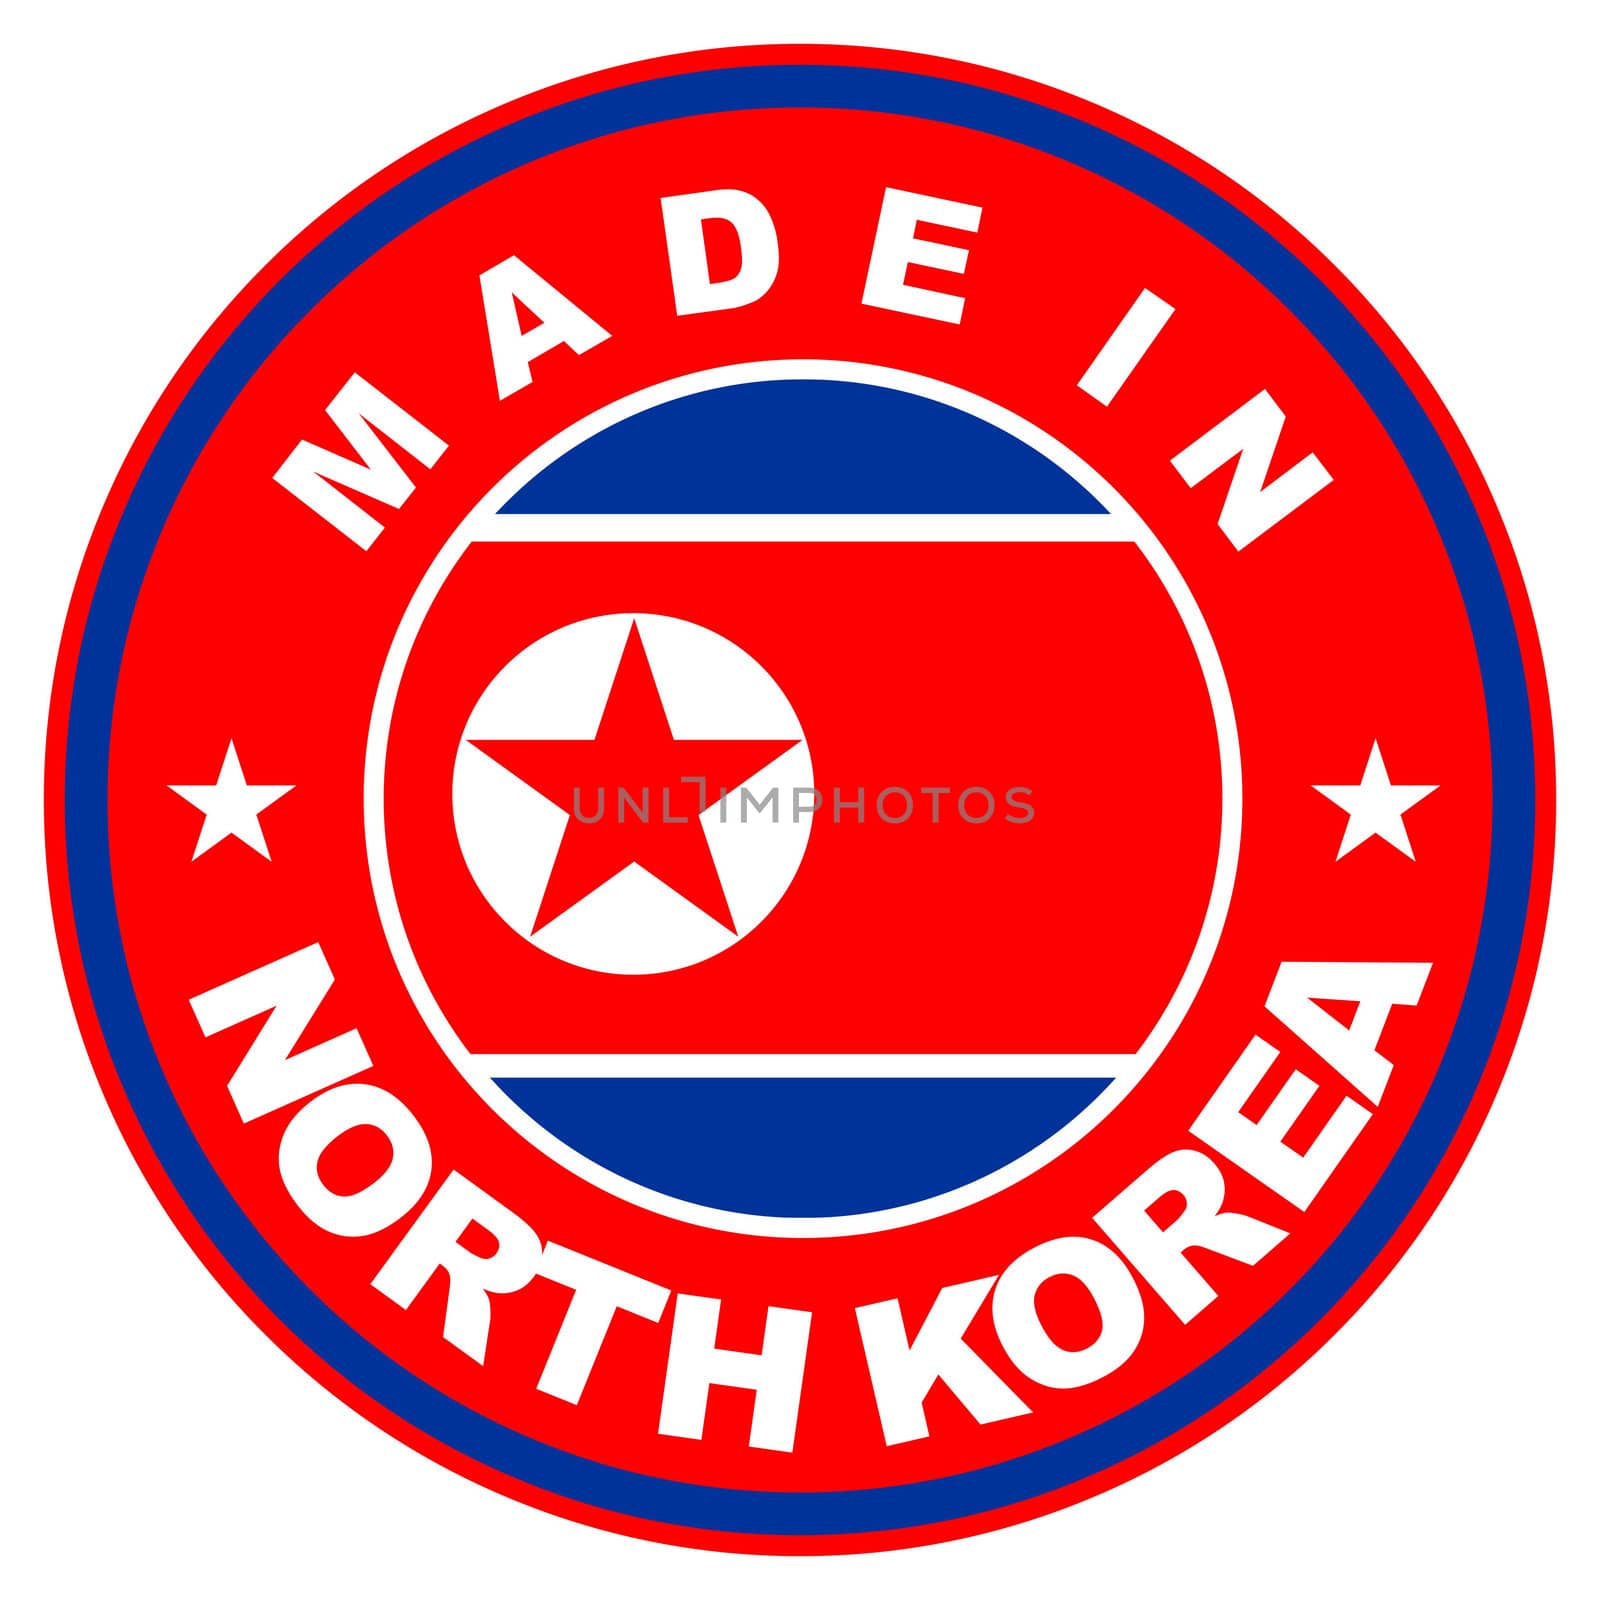 made in north korea by tony4urban